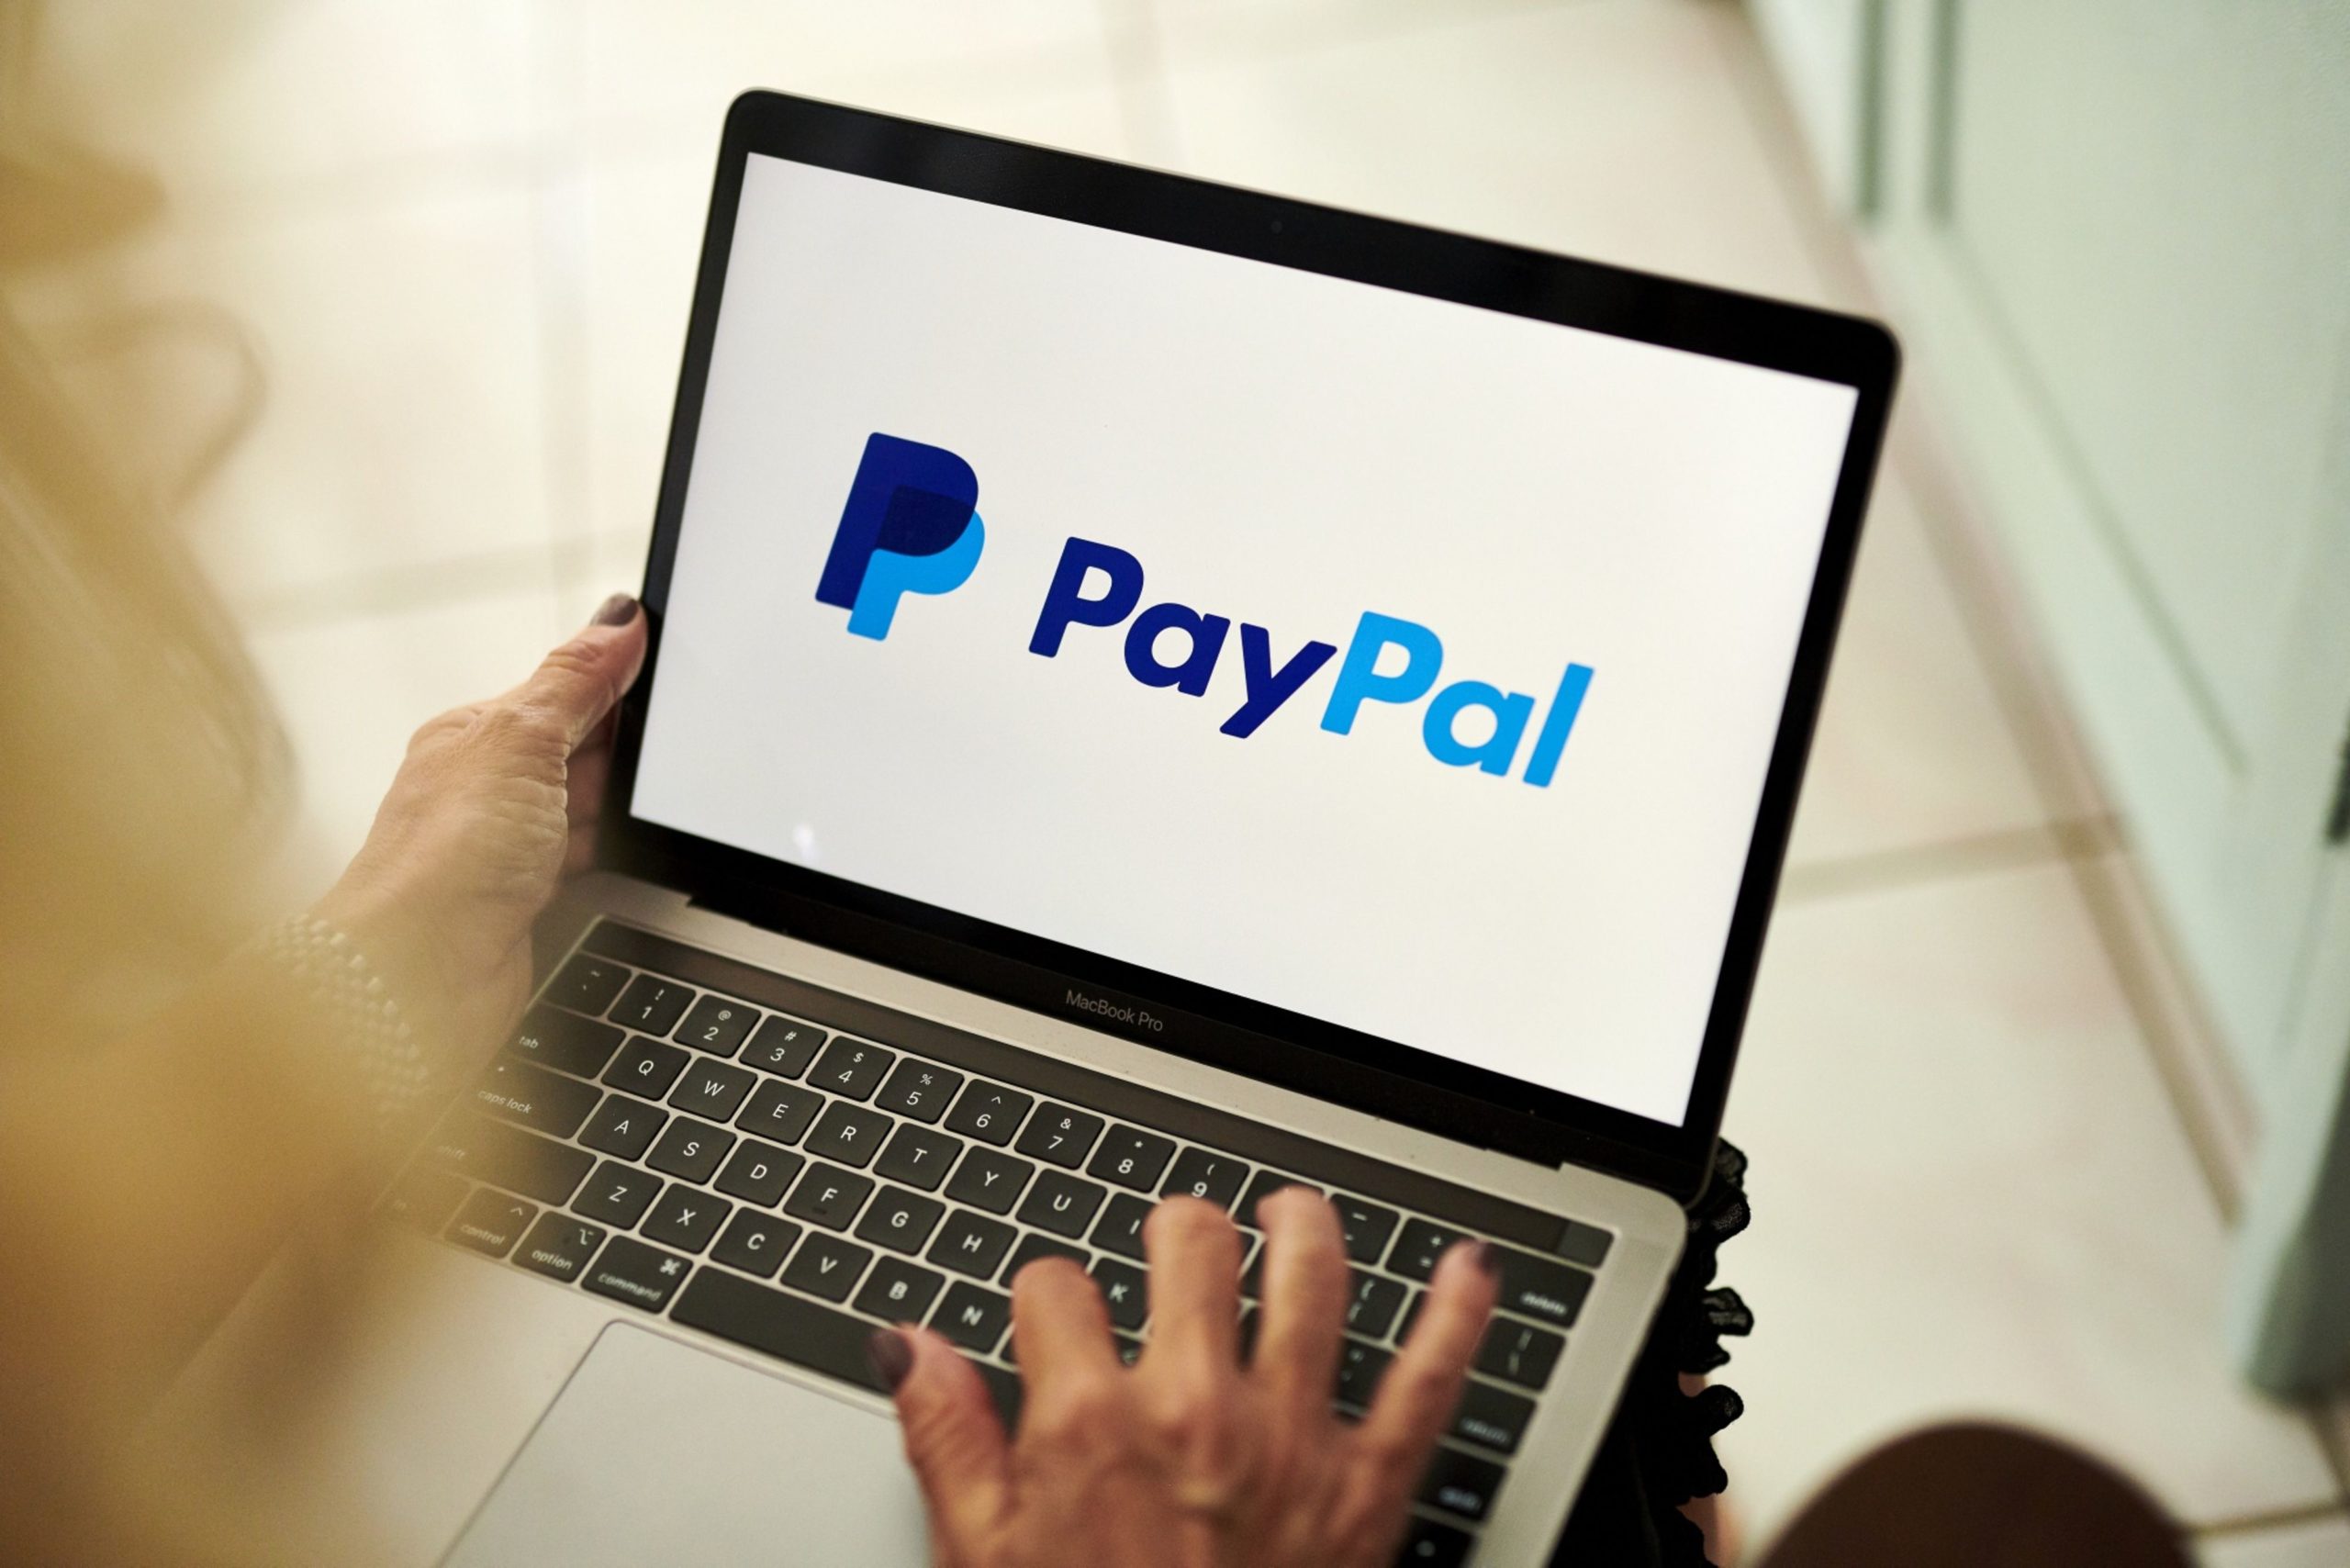 PayPal continúa con sus inversiones en tecnología a pesar de los despidos